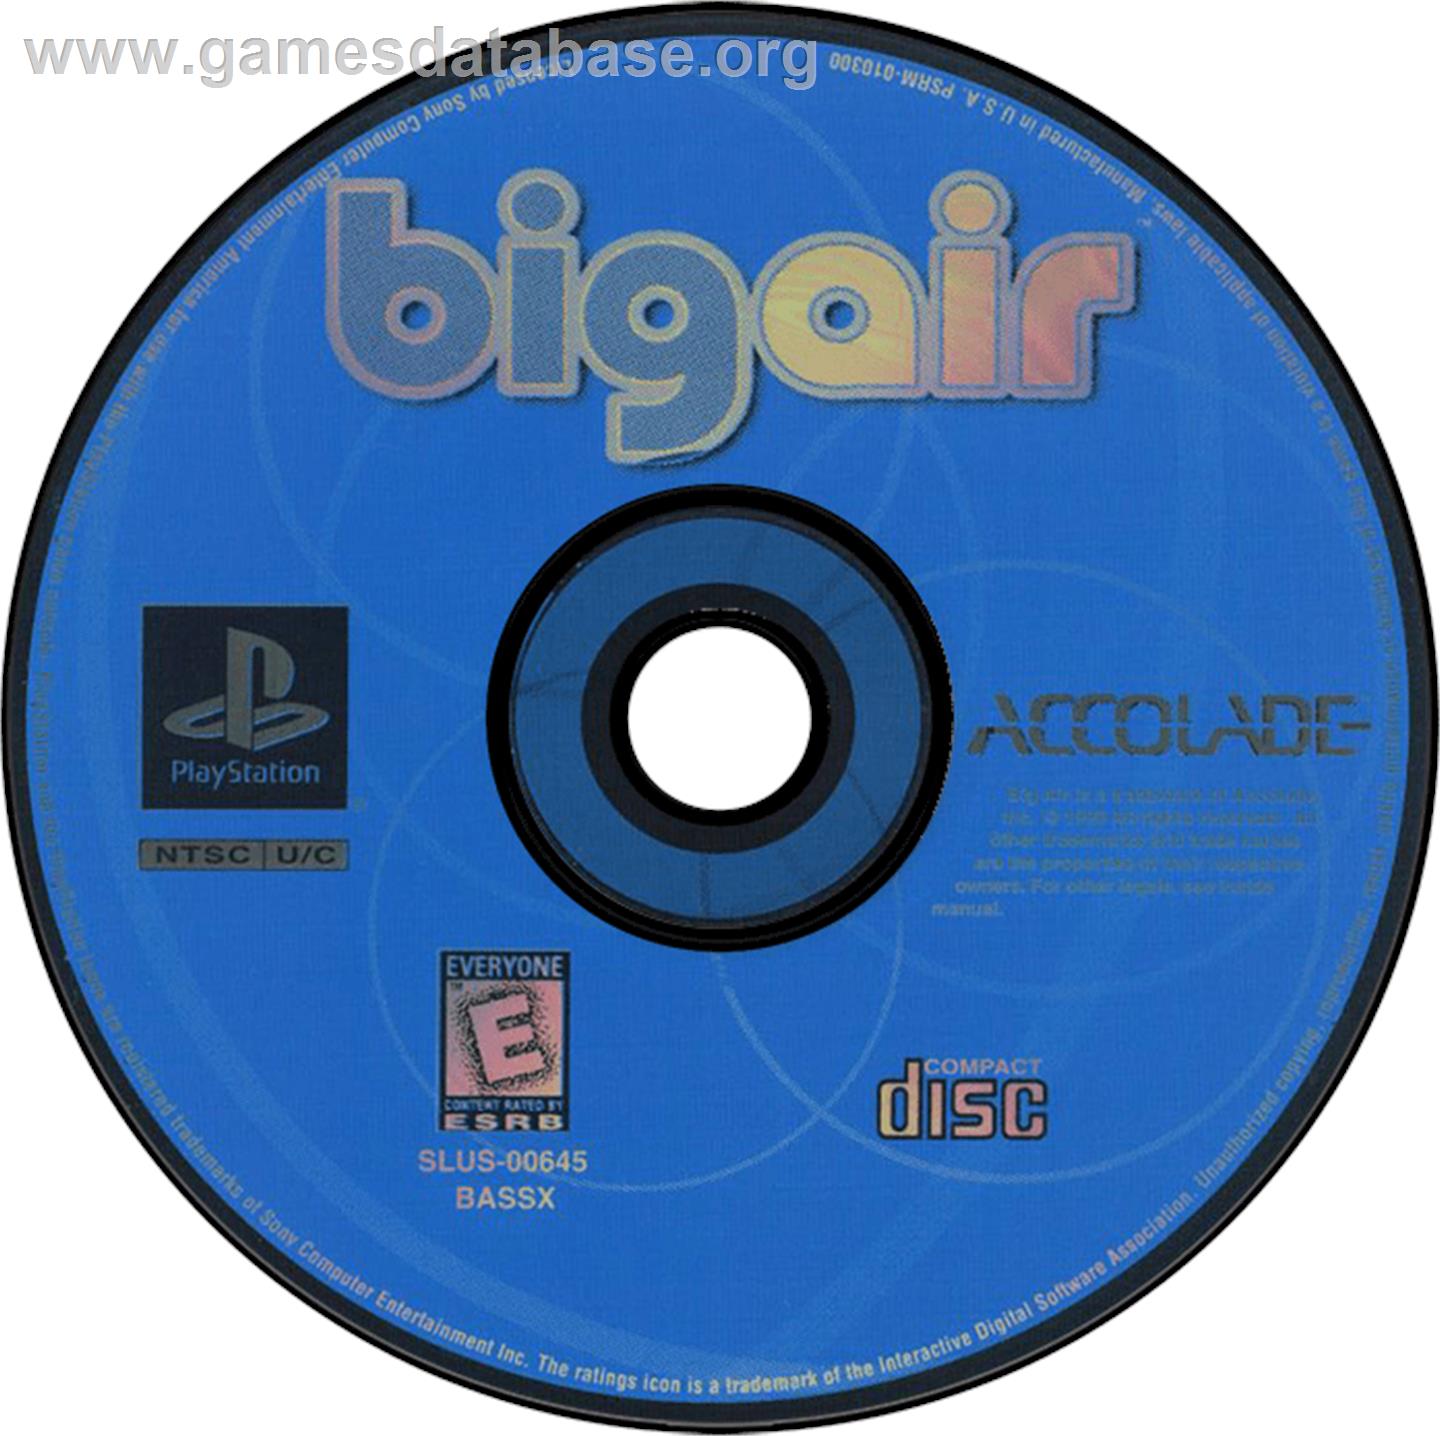 Big Air - Sony Playstation - Artwork - Disc